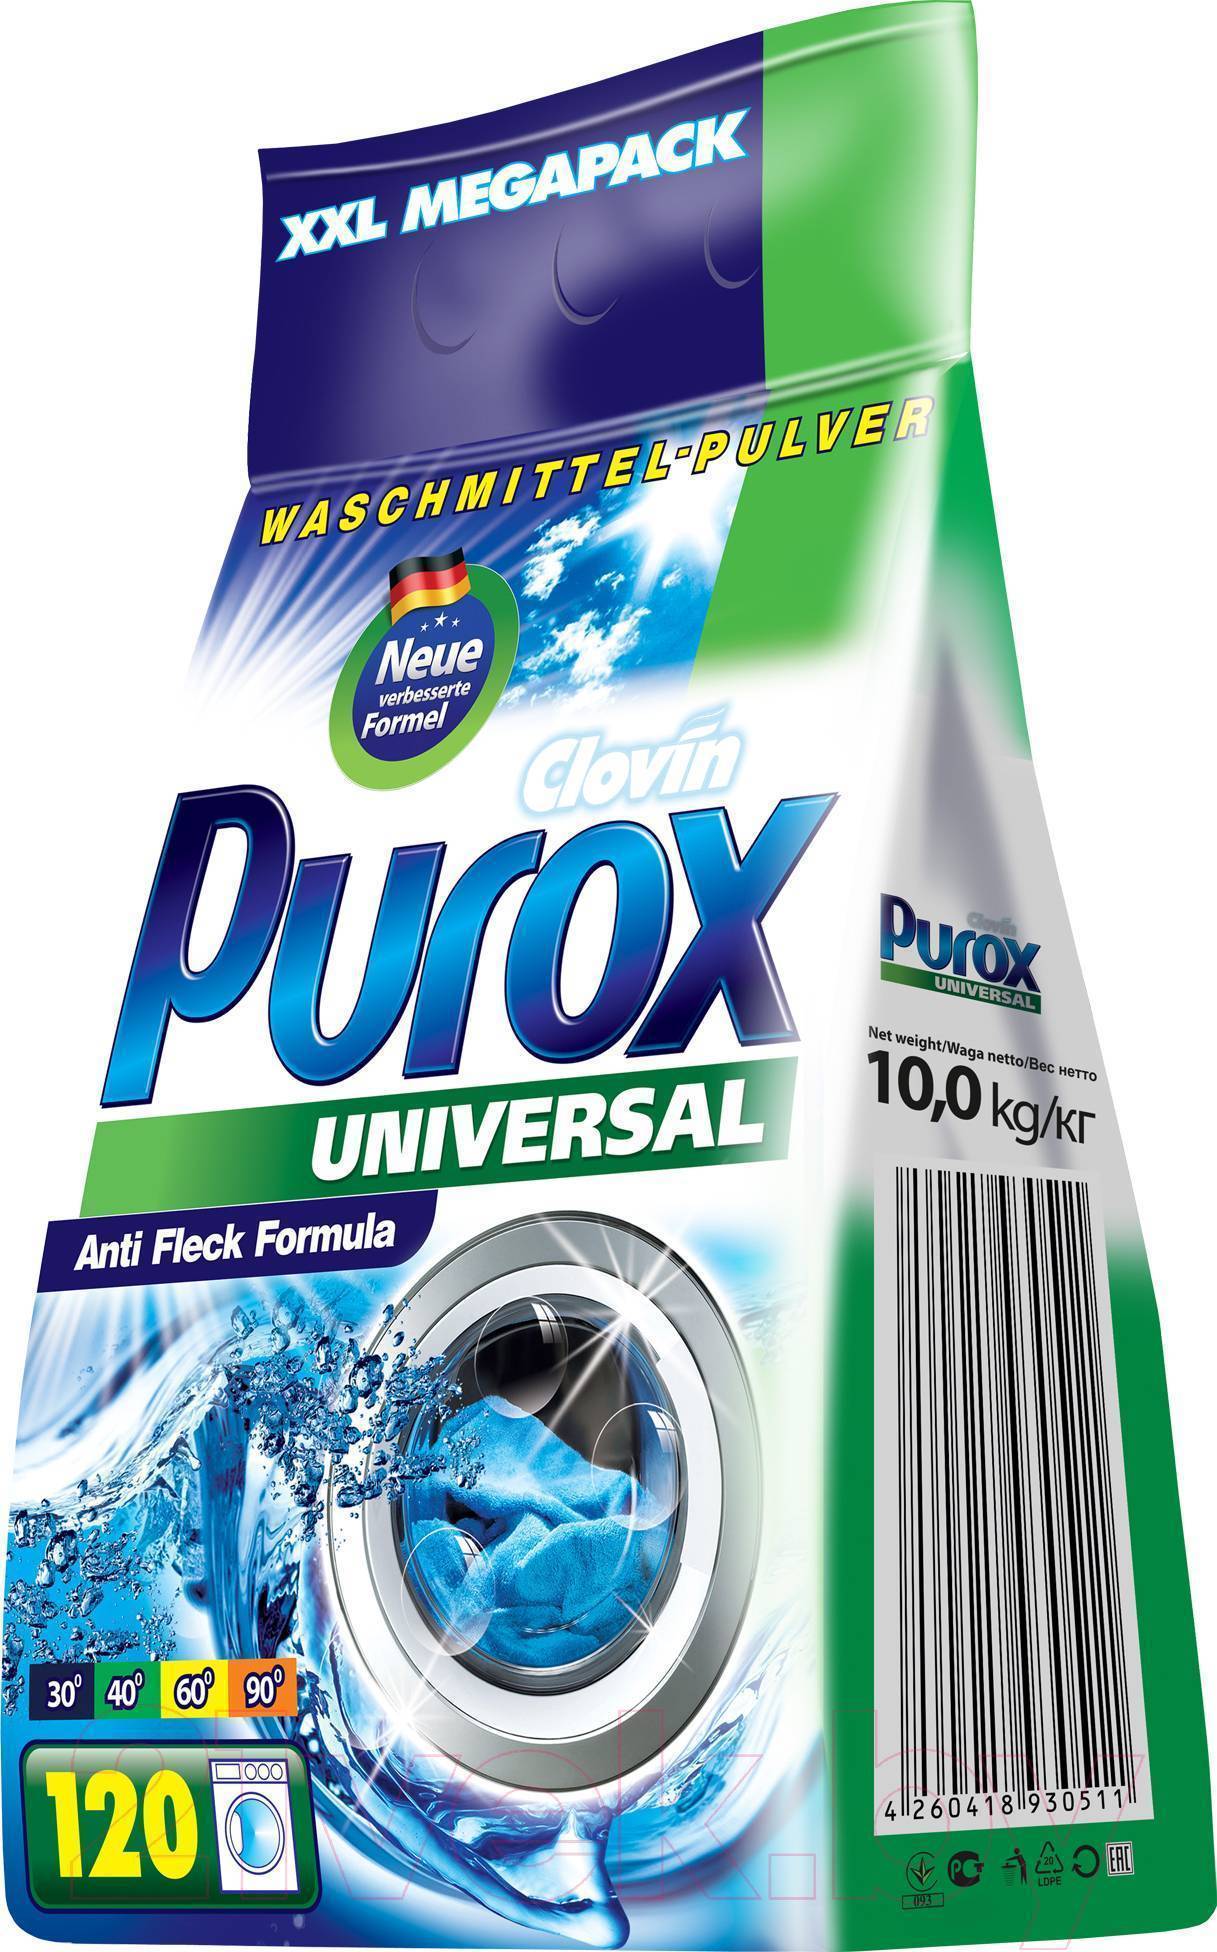 Порошок универсал отзывы. Универсальный стиральный порошок Purox Universal 10 кг (пакет). Порошок Purox 10кг. Универсальный стиральный порошок Purox Universal 5,5 кг (пакет). Стиральный порошок Clovin Purox.